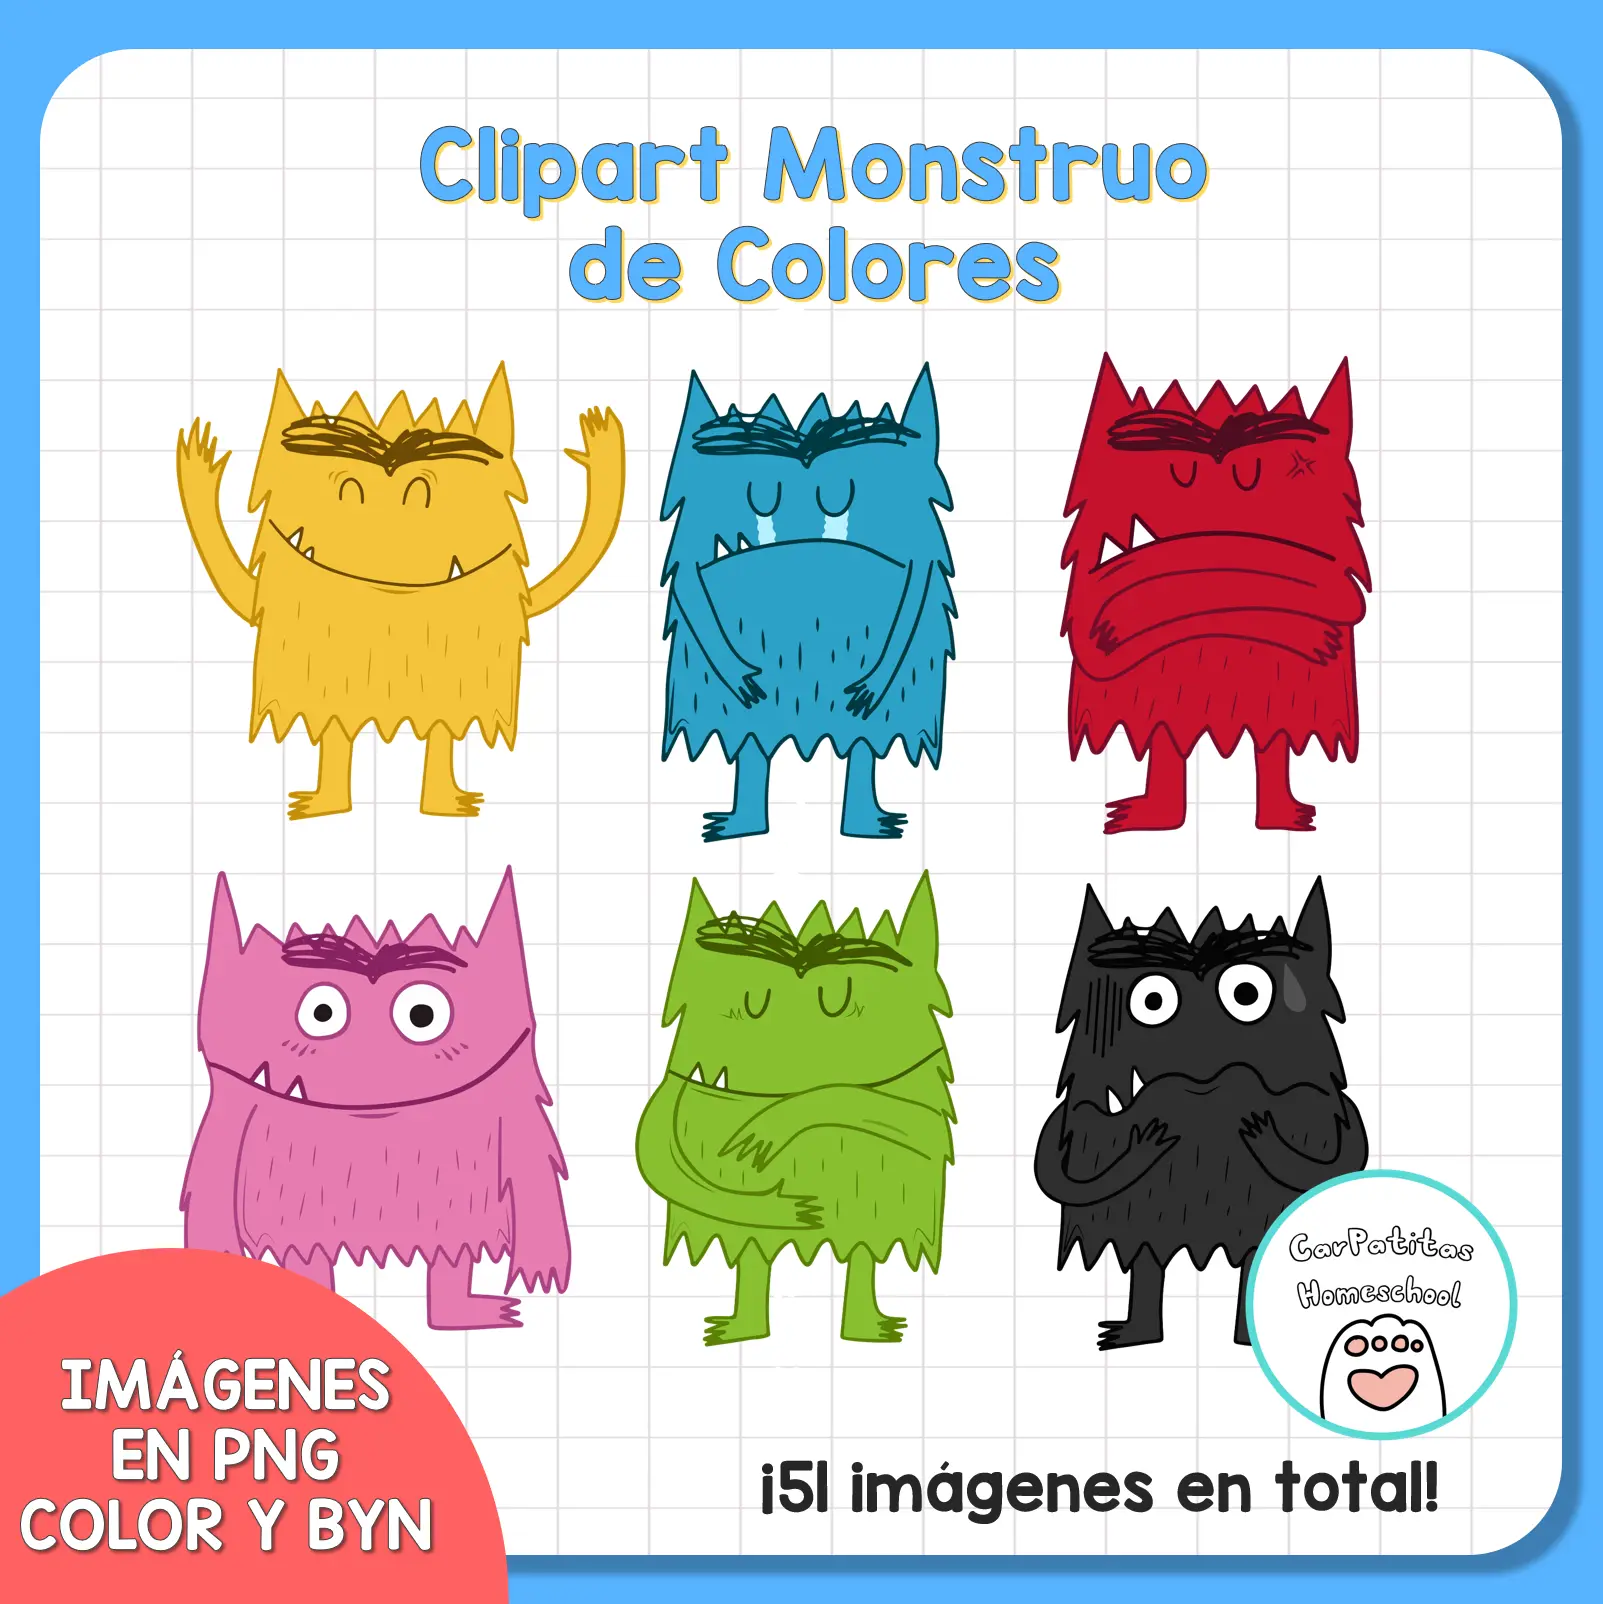 Clipart Monstruo de Colores - Color Monster Clipart (Basado en el libro de Anna Llenas)